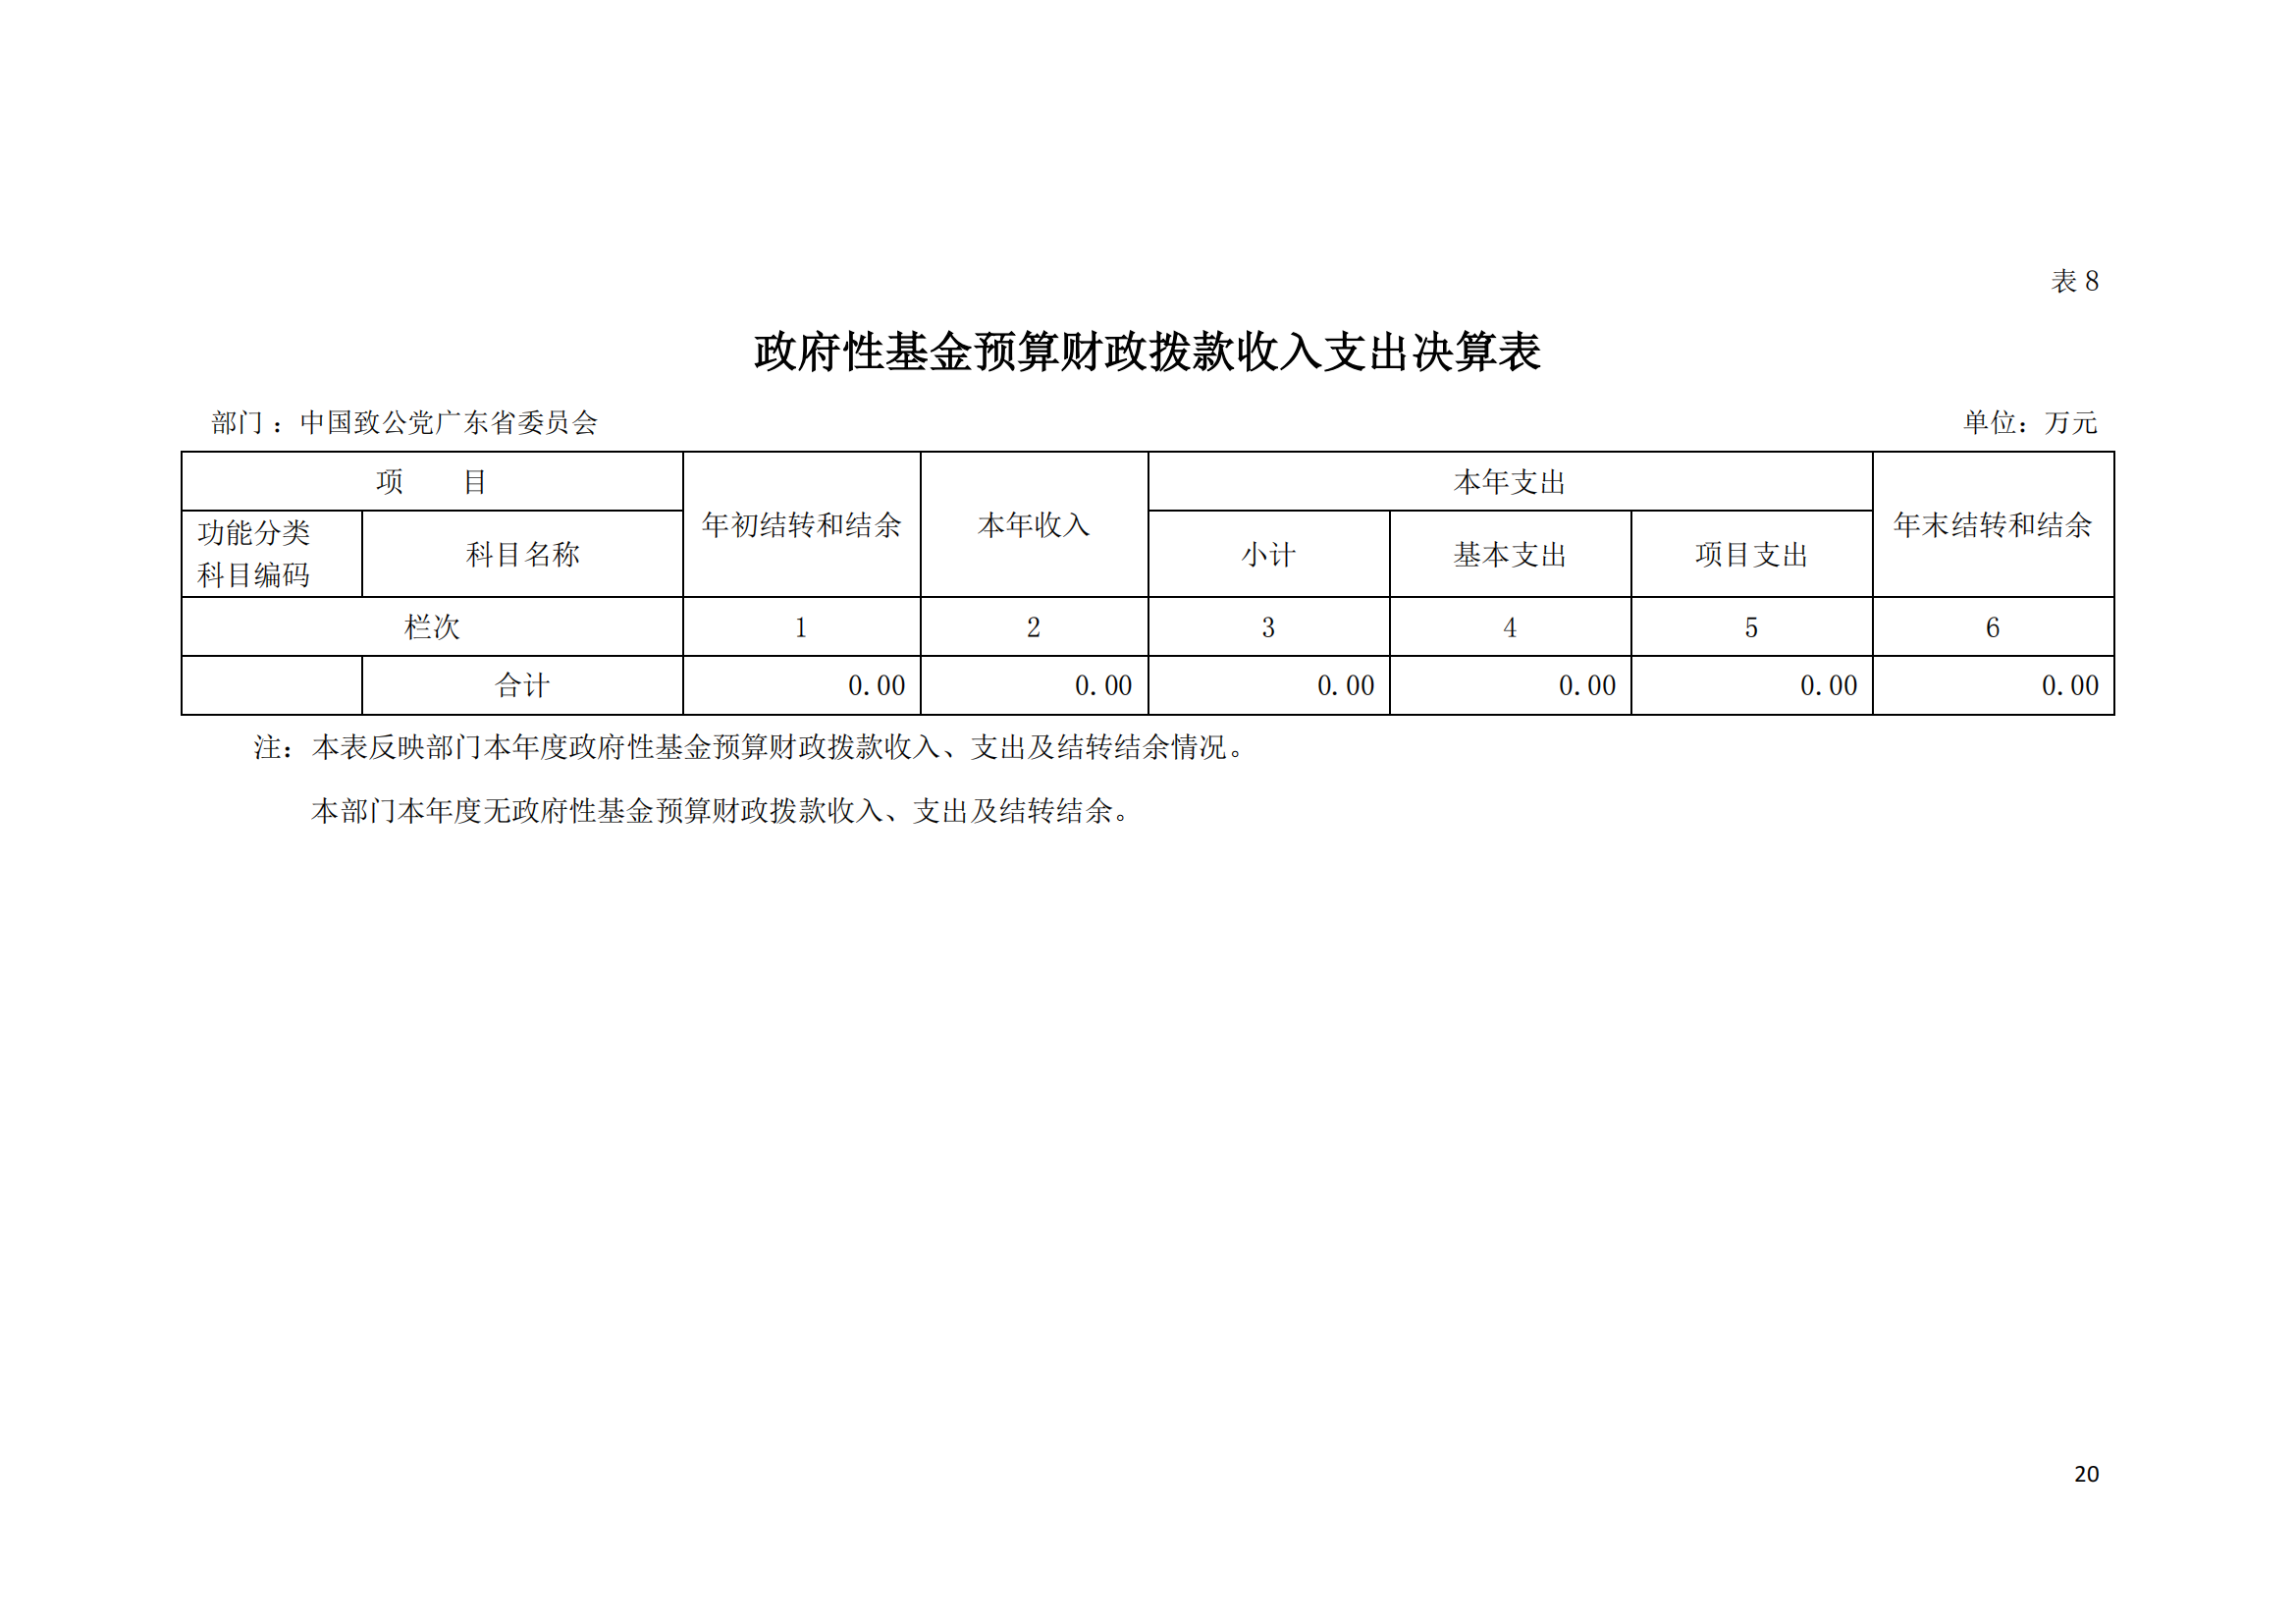 2021年中国致公党广东省委员会部门决算（0706更新）_19.png